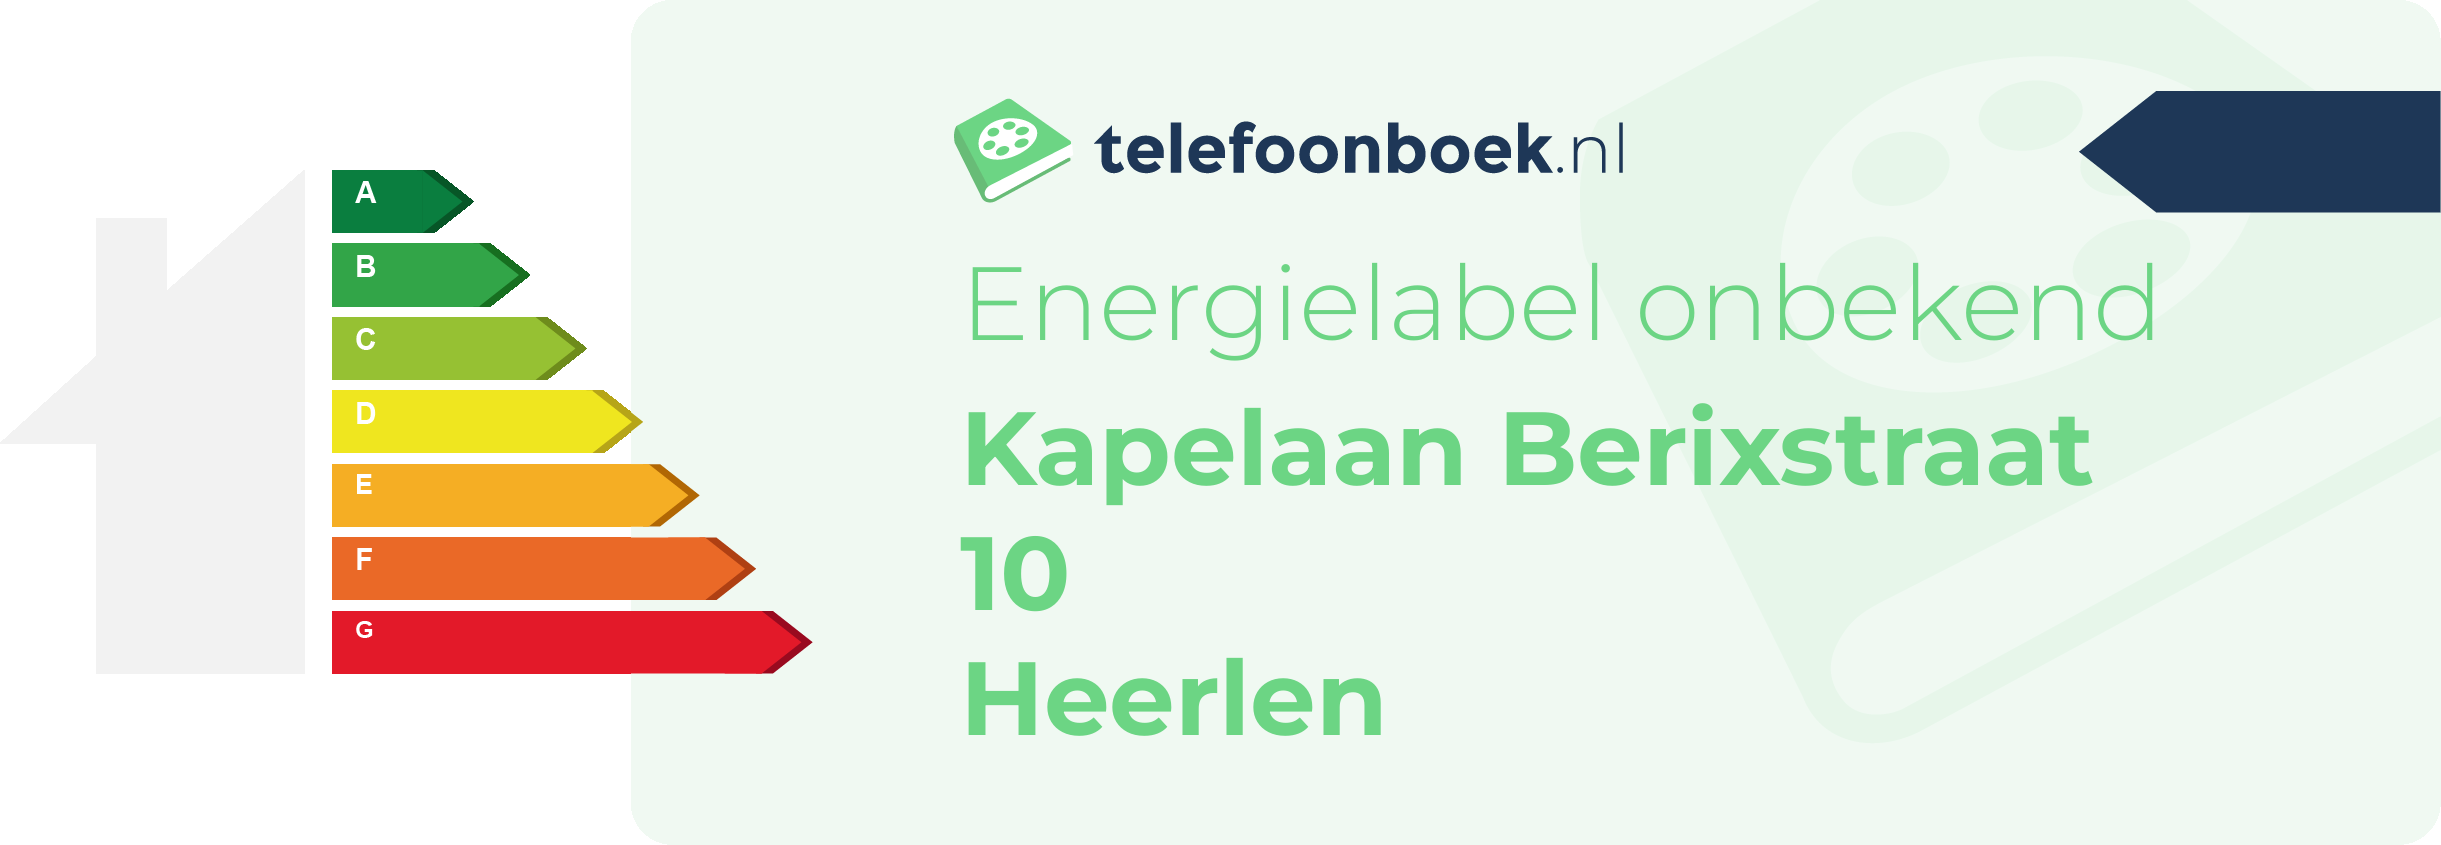 Energielabel Kapelaan Berixstraat 10 Heerlen